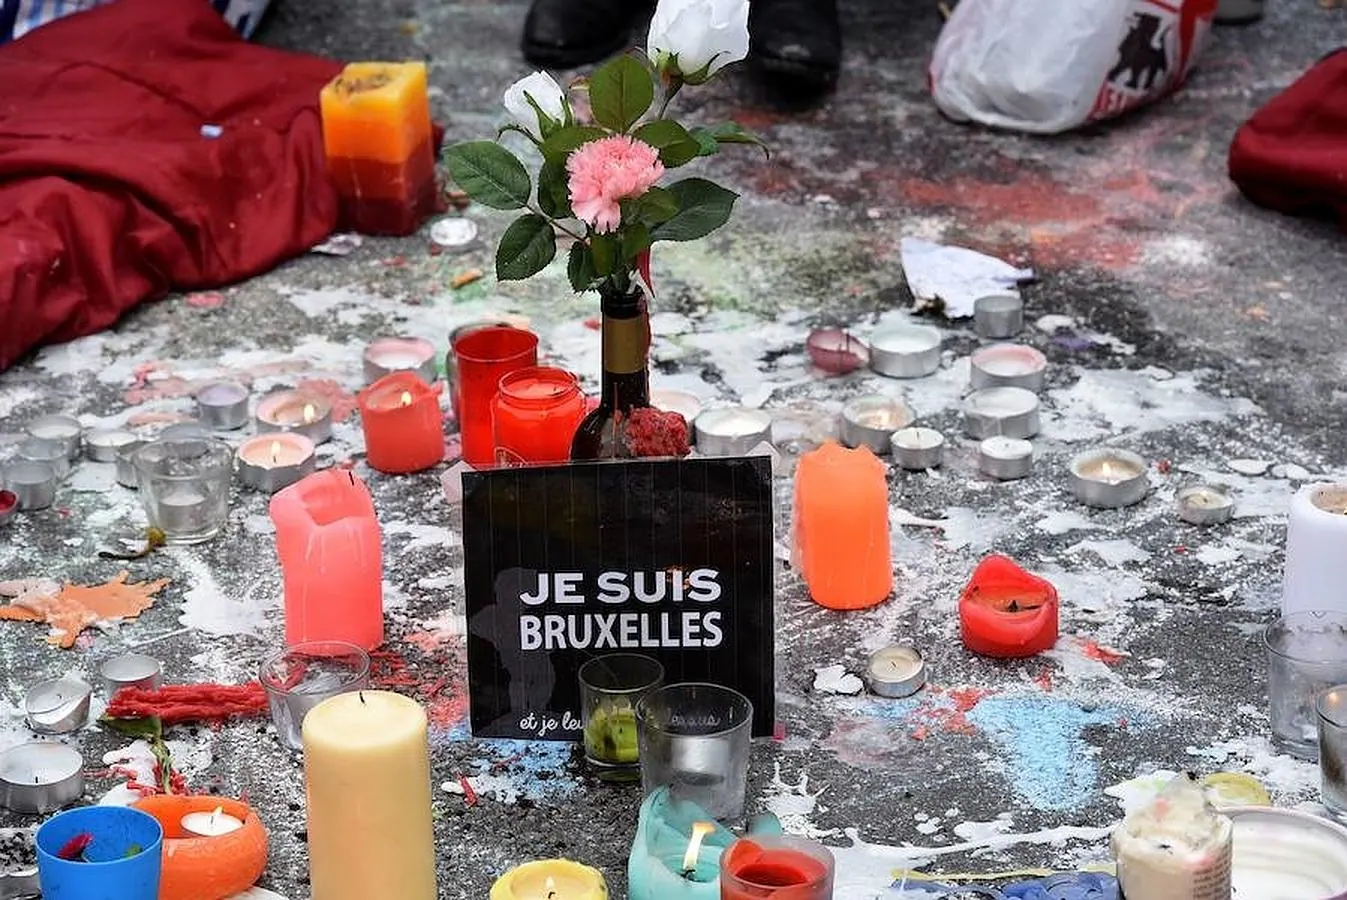 #JeSuisBruxelles ha tomado las redes y las calles